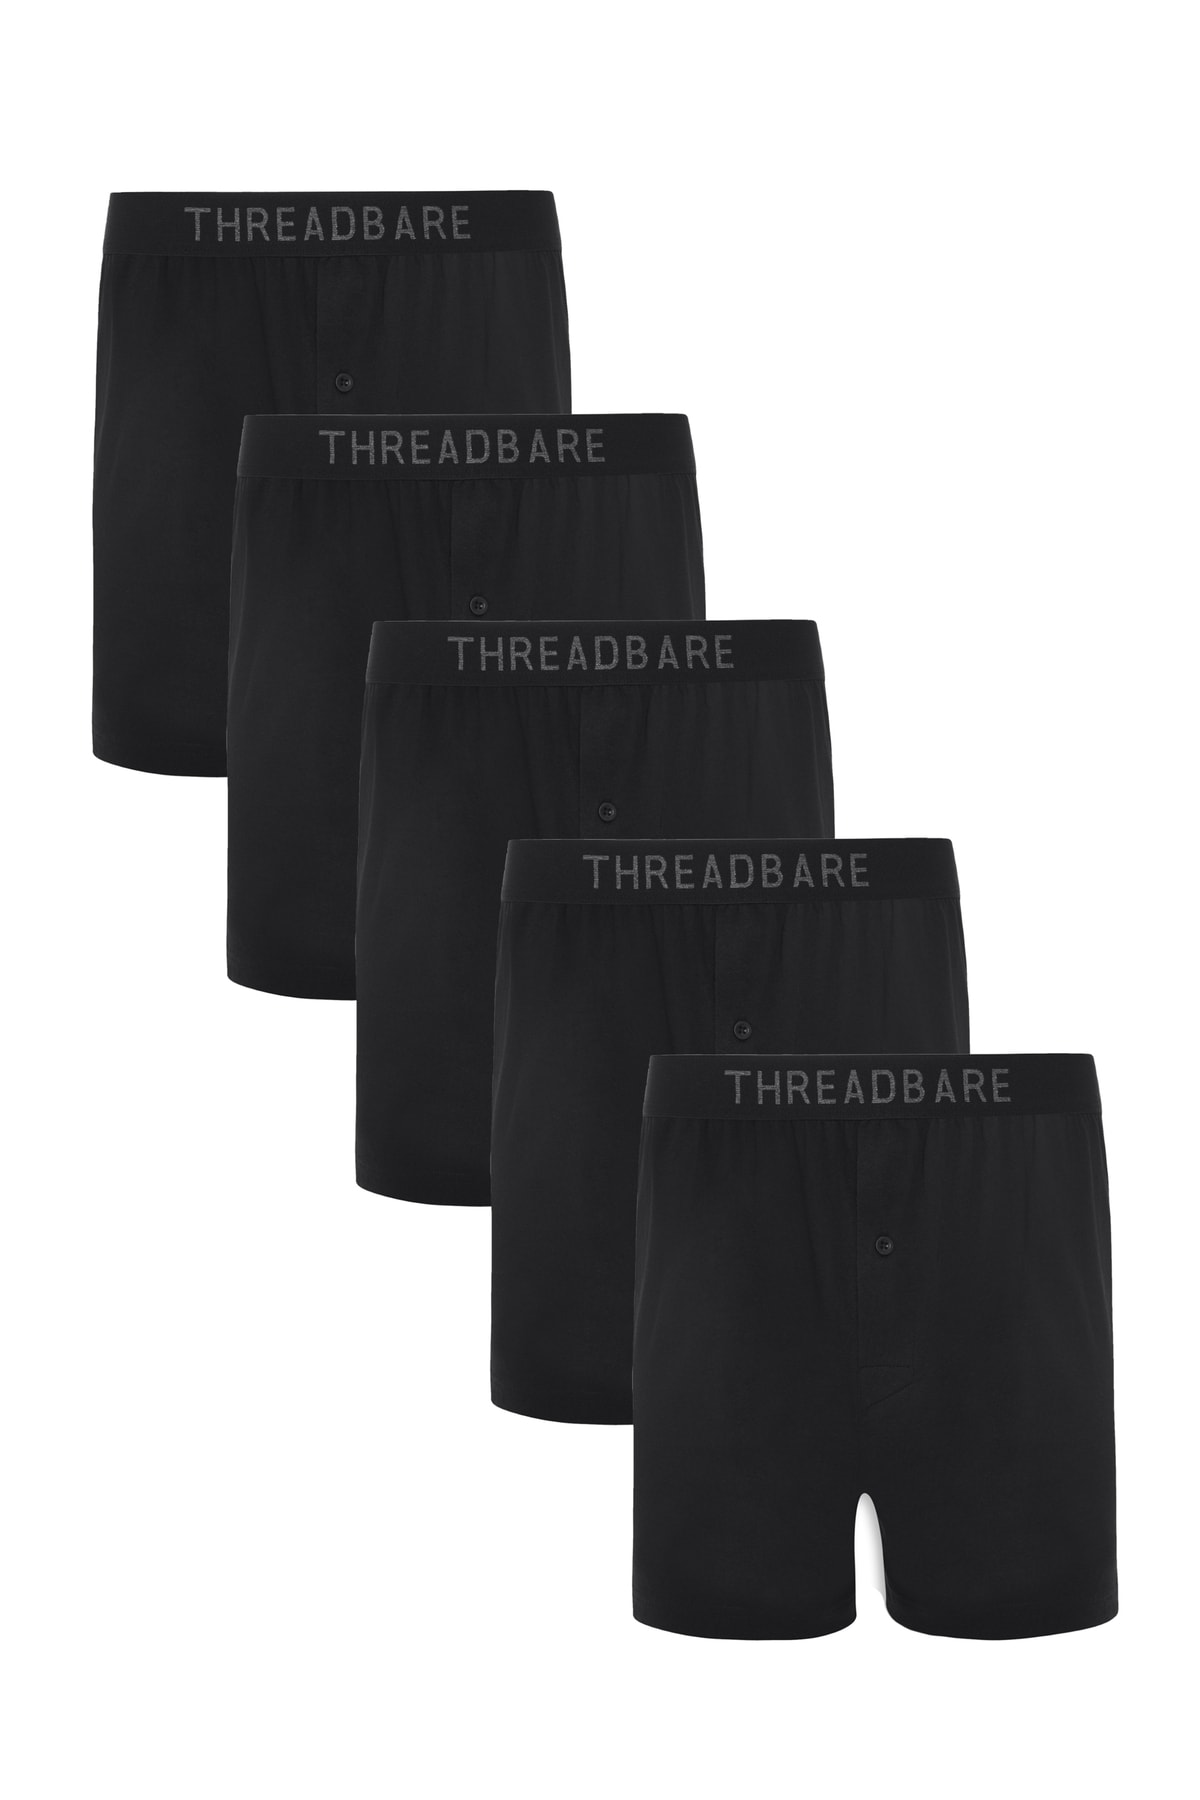 Threadbare Boxershorts Schwarz 5er-Pack Fast ausverkauft